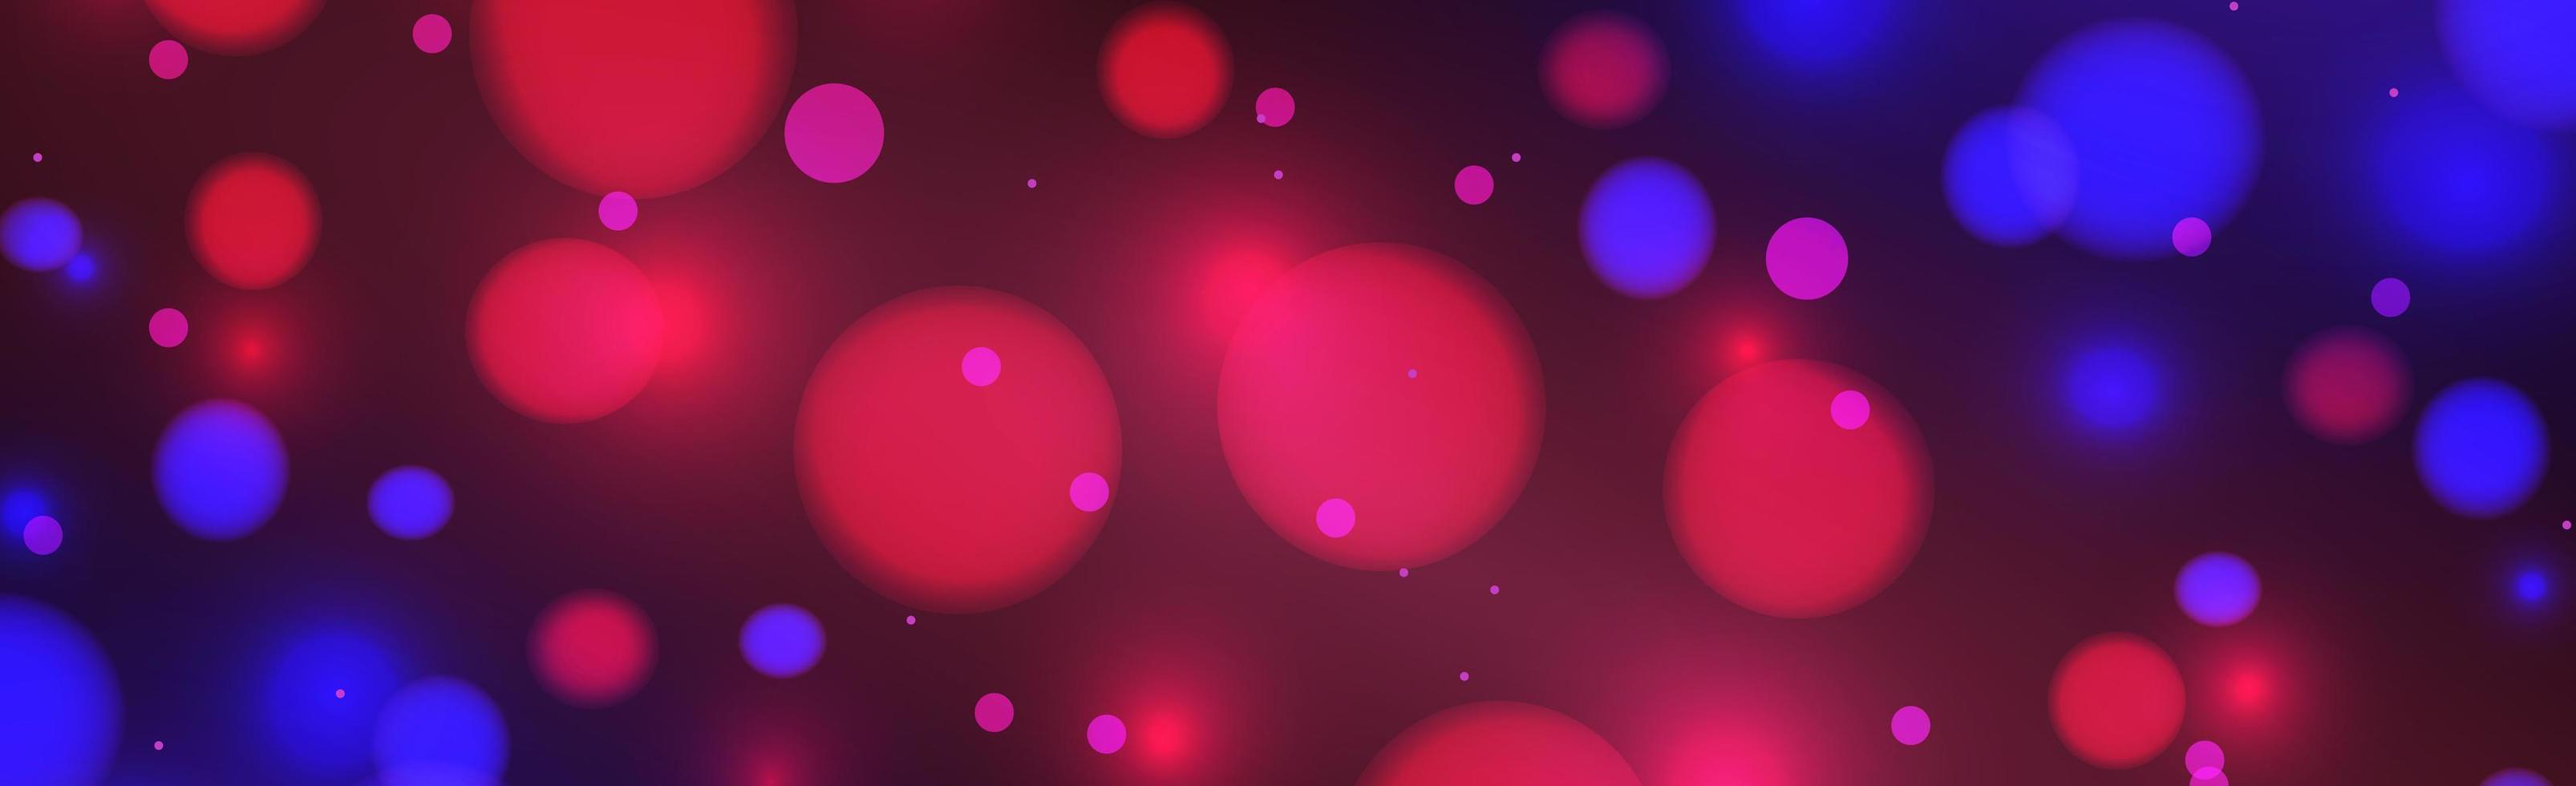 abstrakter blauer und roter Panorama-Bokeh-Hintergrund mit defokussierten Kreisen und Glitzer. Dekorationselement für Weihnachten und Neujahr, Grußkarten, Webbanner, Poster - Vektor